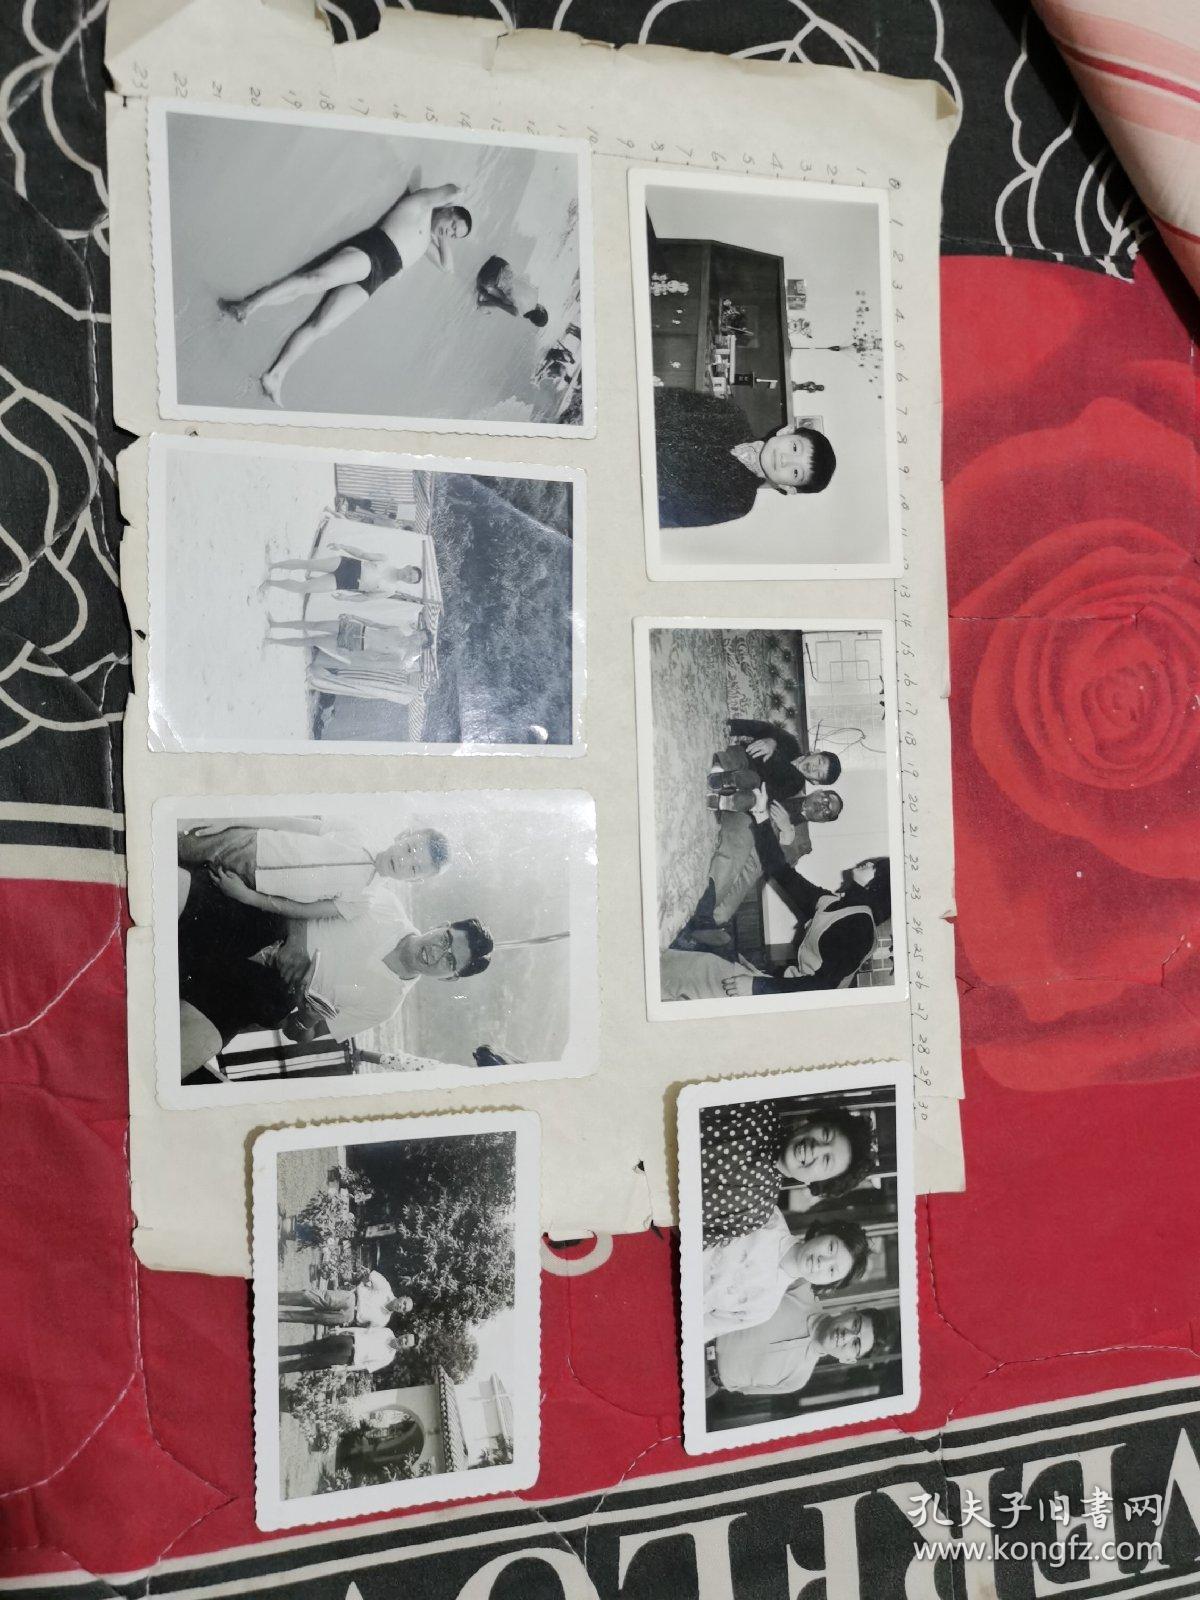 老照片:某香港男子生活照一组7枚(6'70年代